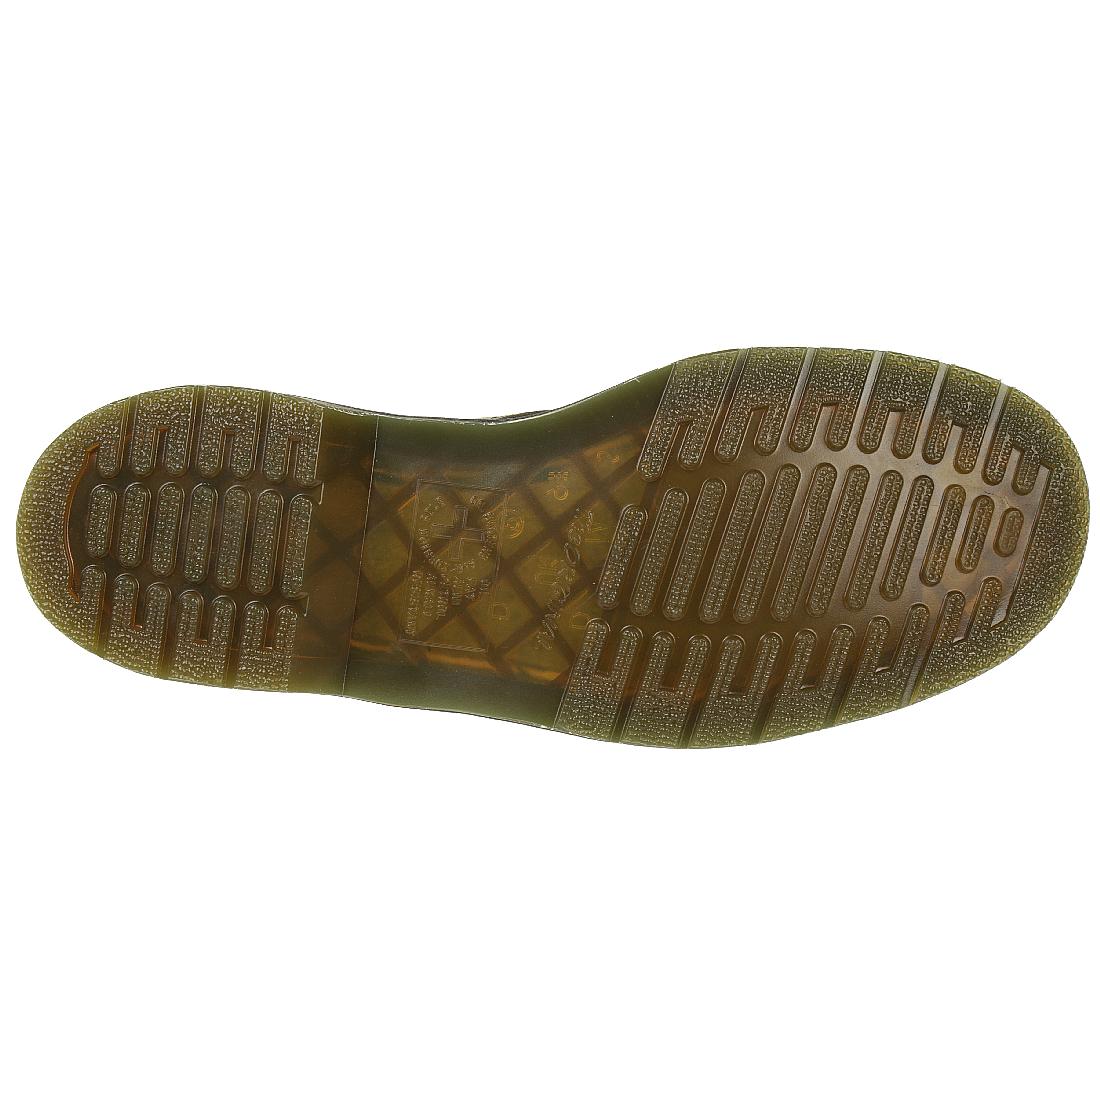 Dr. Martens 1460 Dusky Olive Unisex Stiefel Boots grün 24540305